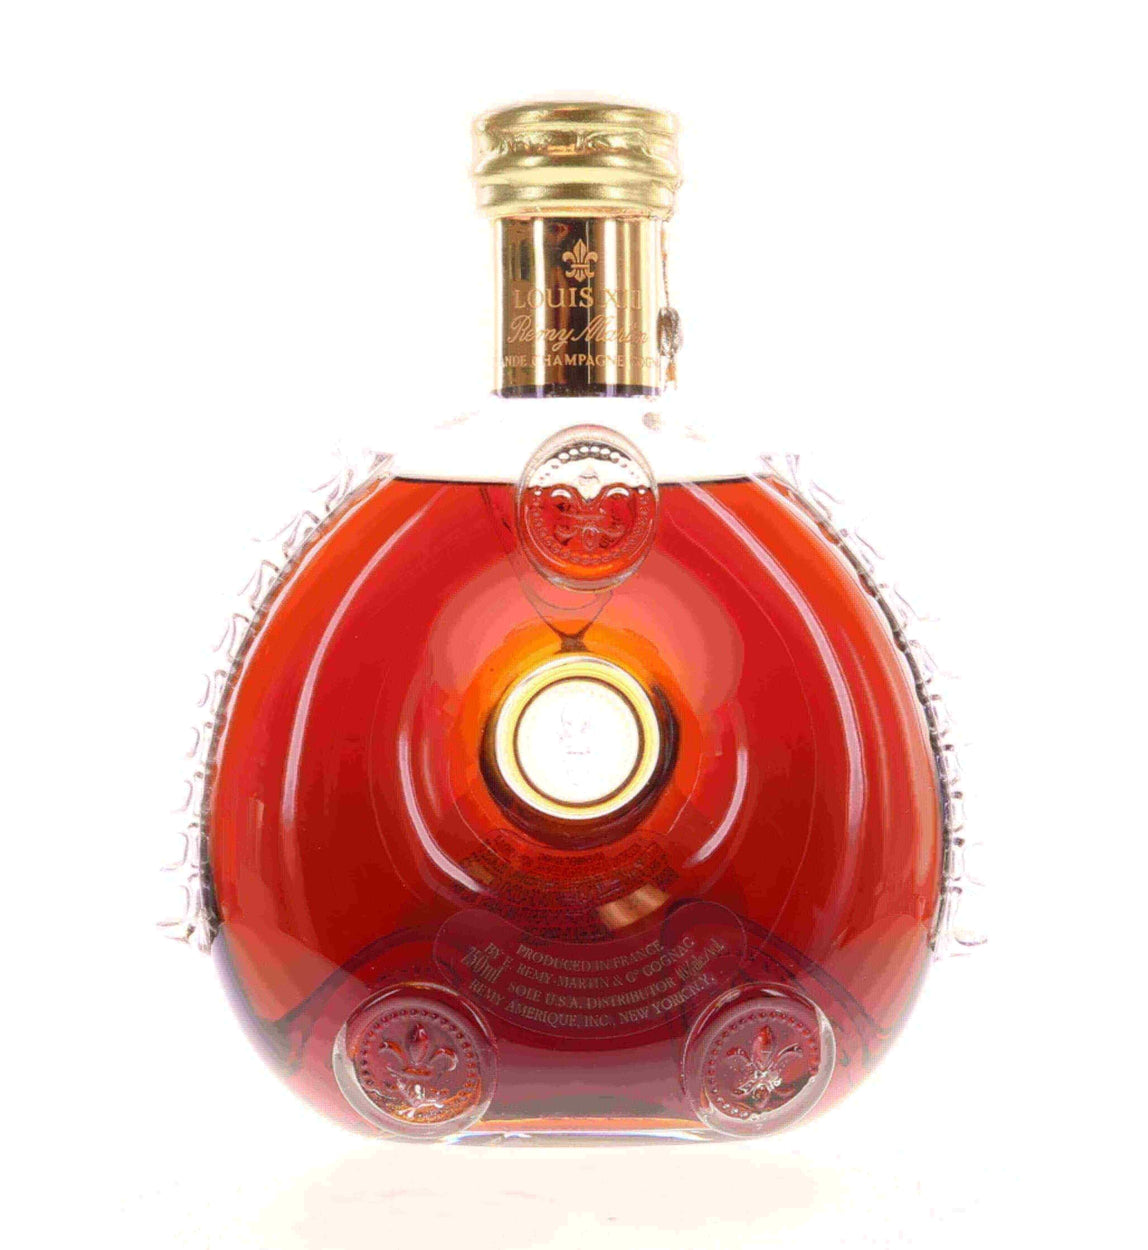 Empty Louis Xiii Cognac Bottle